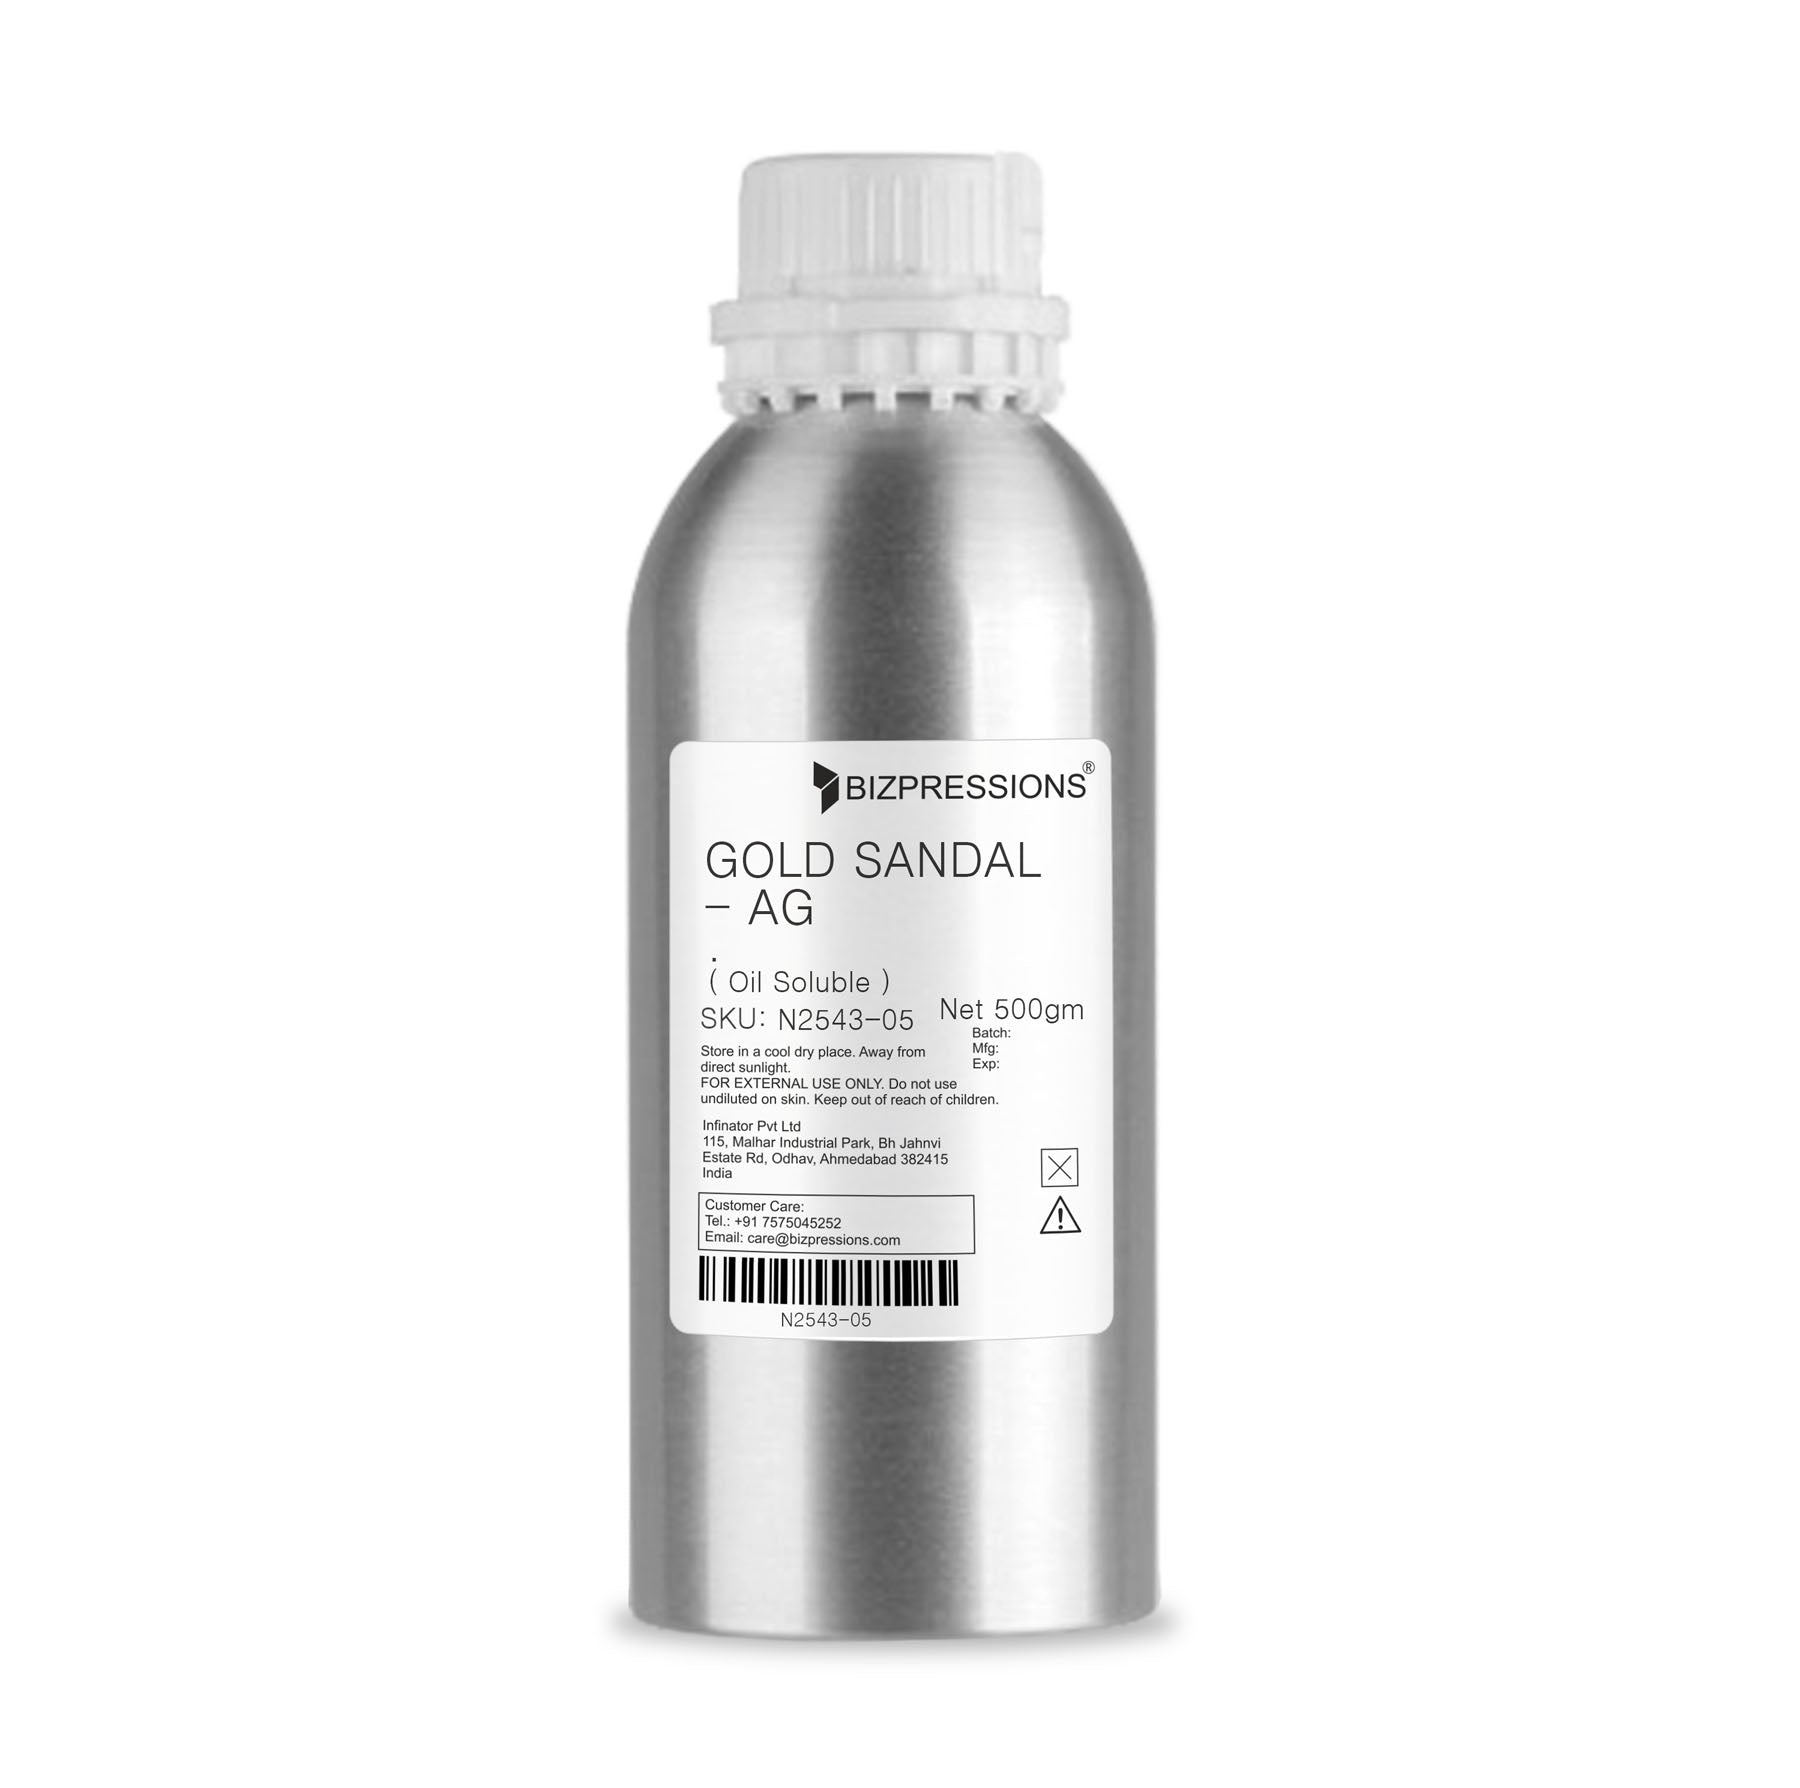 GOLD SANDAL - AG - Fragrance ( Oil Soluble ) - 500 gm